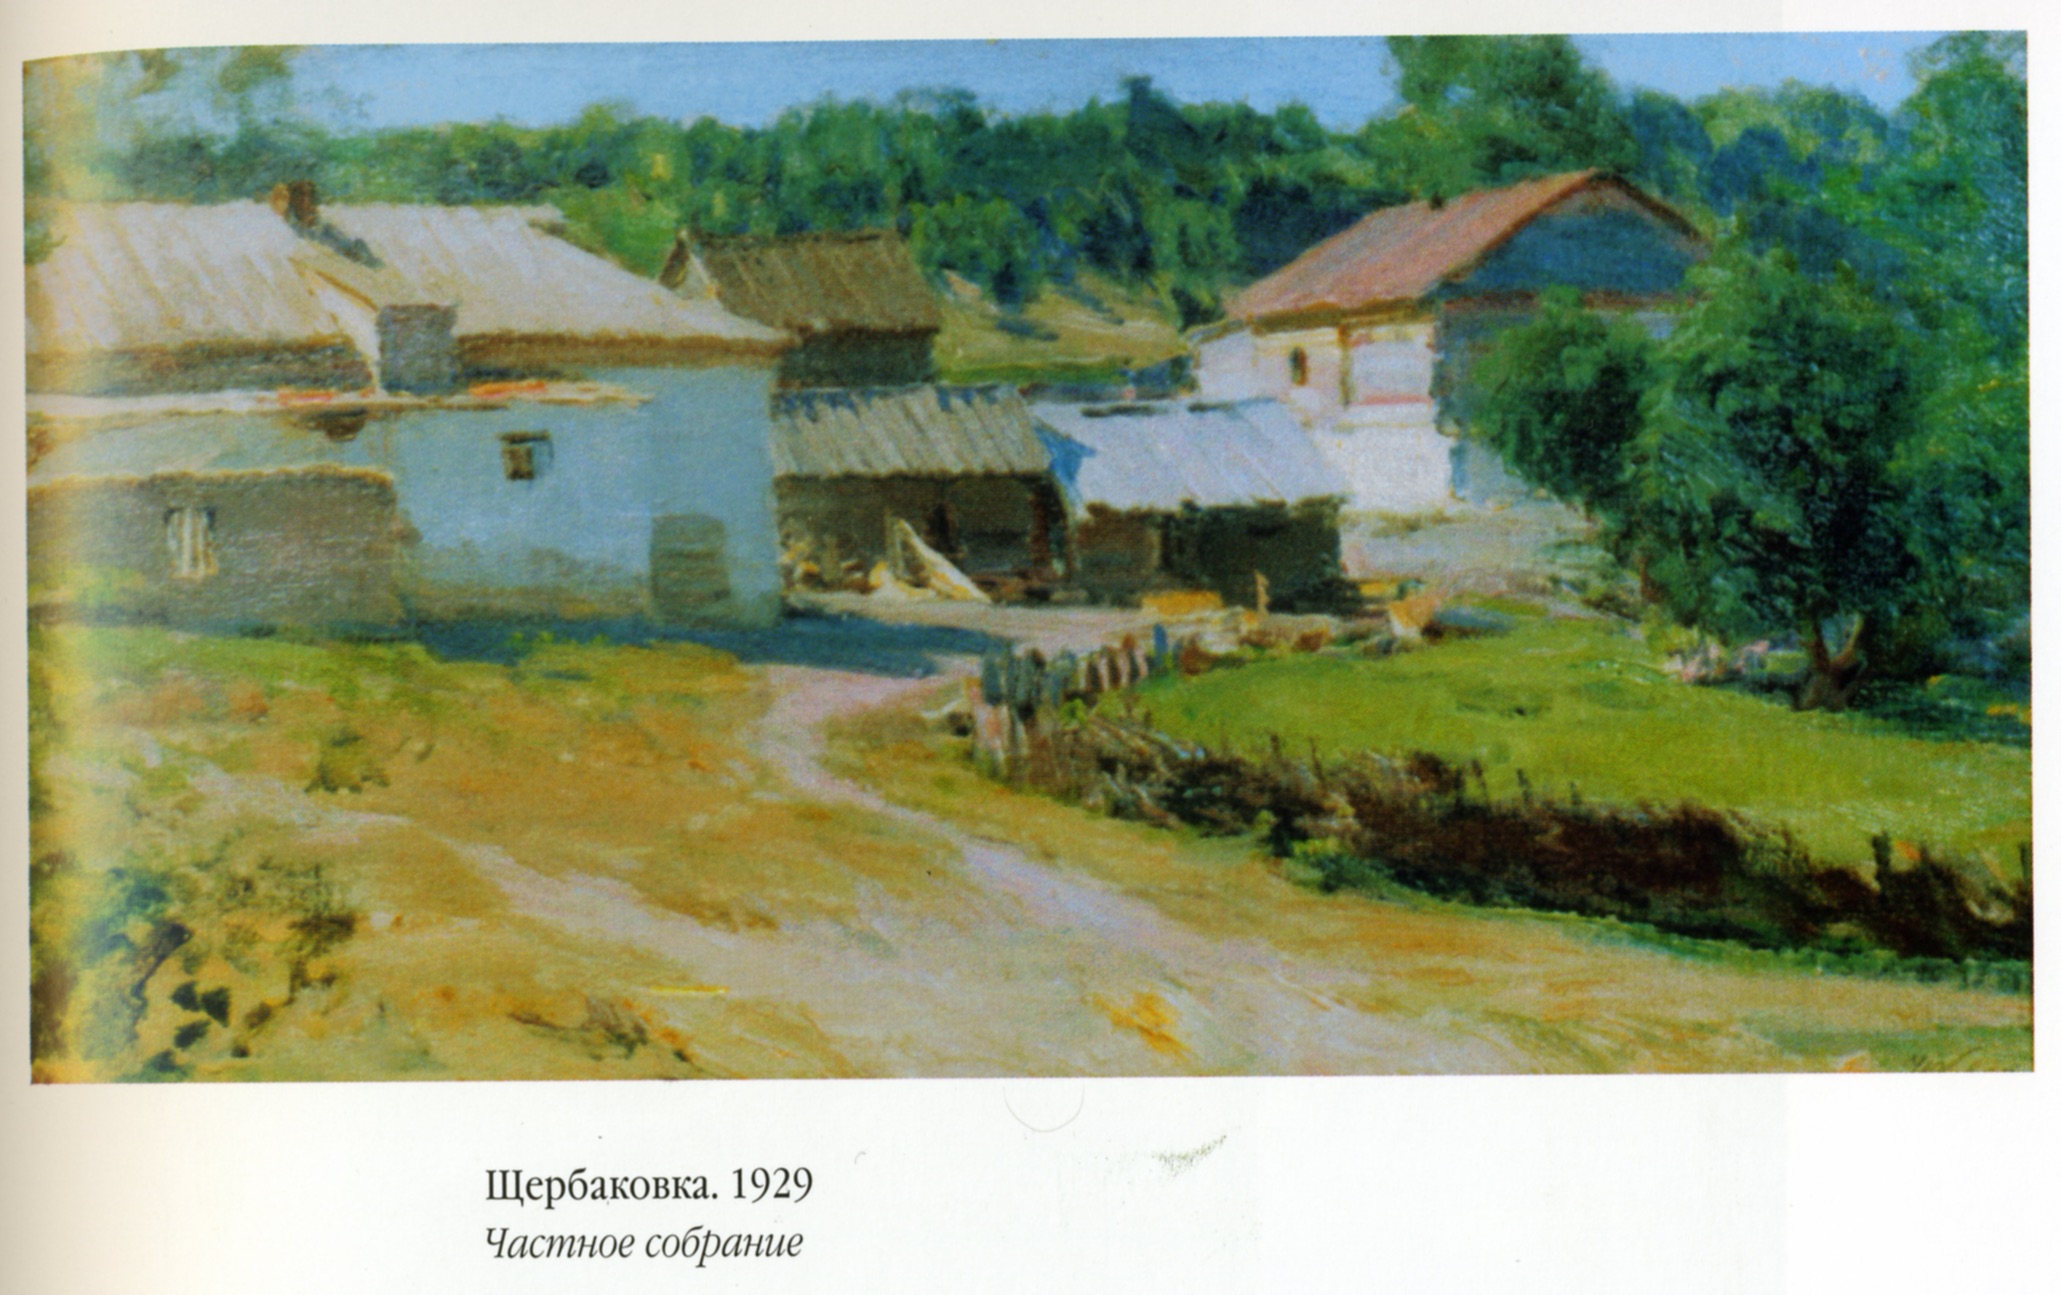 Volga Village by Jakob Weber. Source: Khoroshilova, V.G. "Talent from the Volga" (2006).